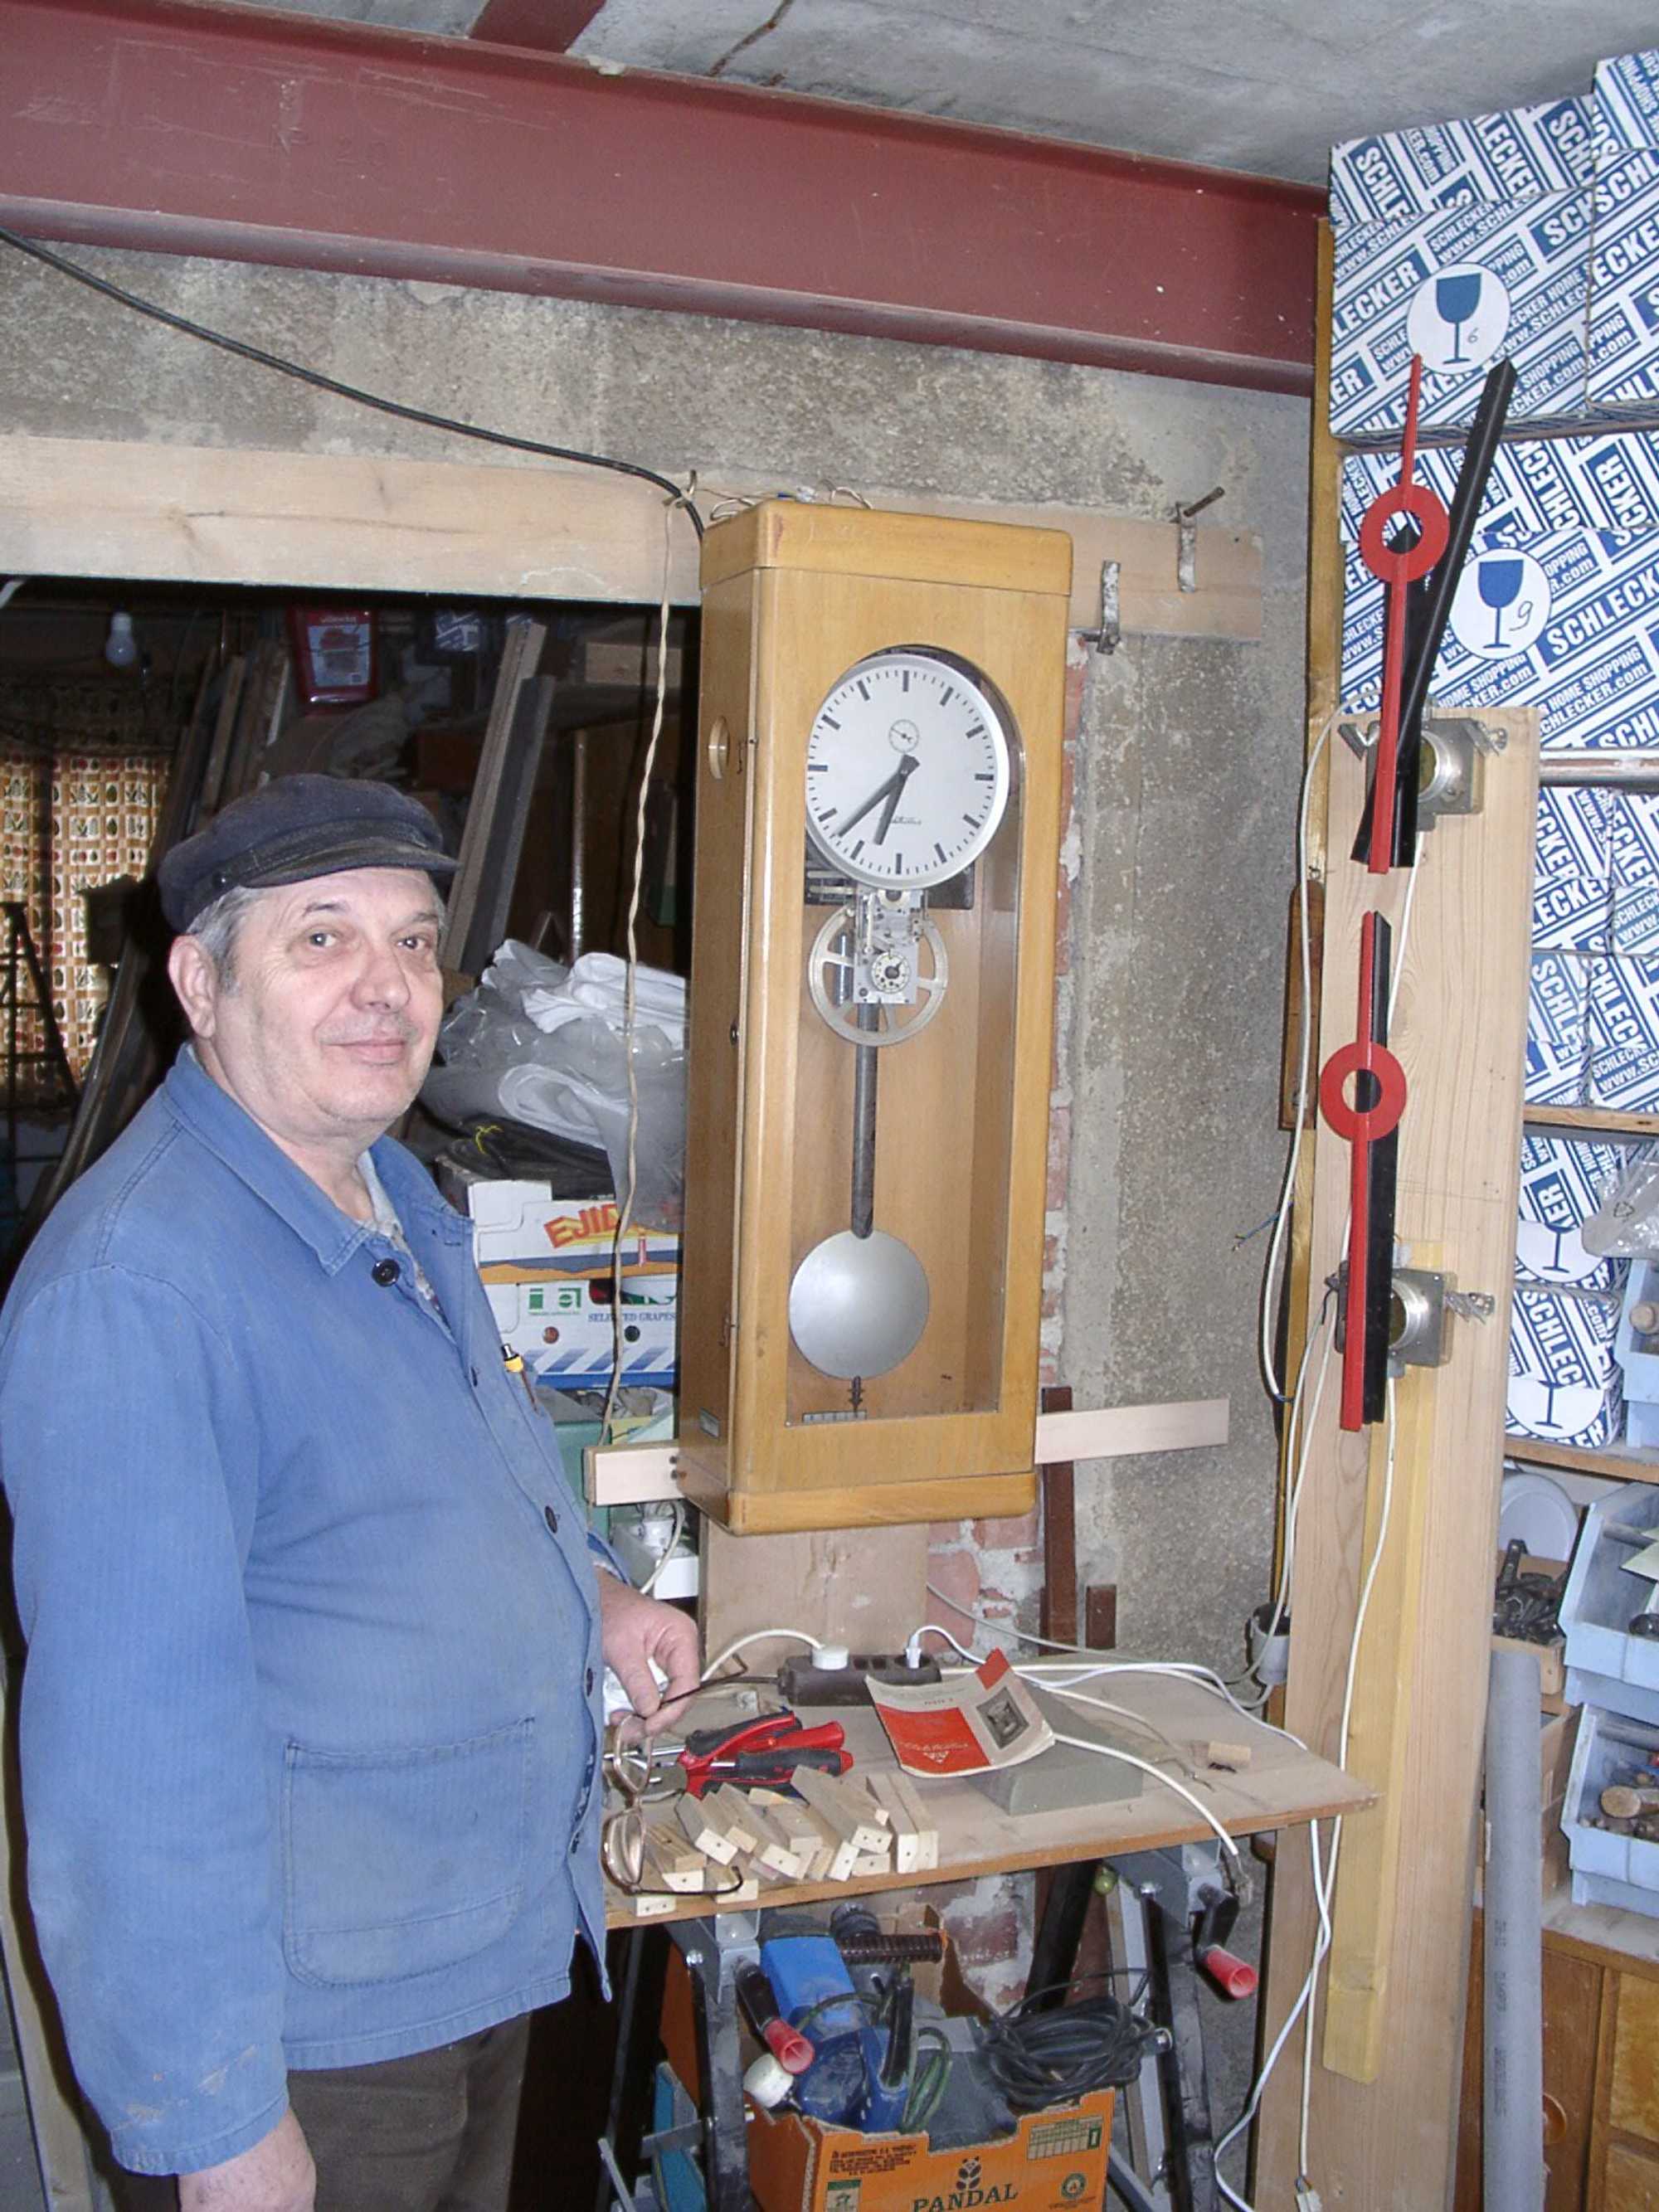 Nach mehrwöchigem erfolgreichem Probelauf der Mutteruhr in Wolfgang Friedels Werkstatt und nachfolgendem Probebetrieb mit der großen Uhr erfolgte Ende März die Installation der Uhren in der Ausstellungs- und Fahrzeughalle.